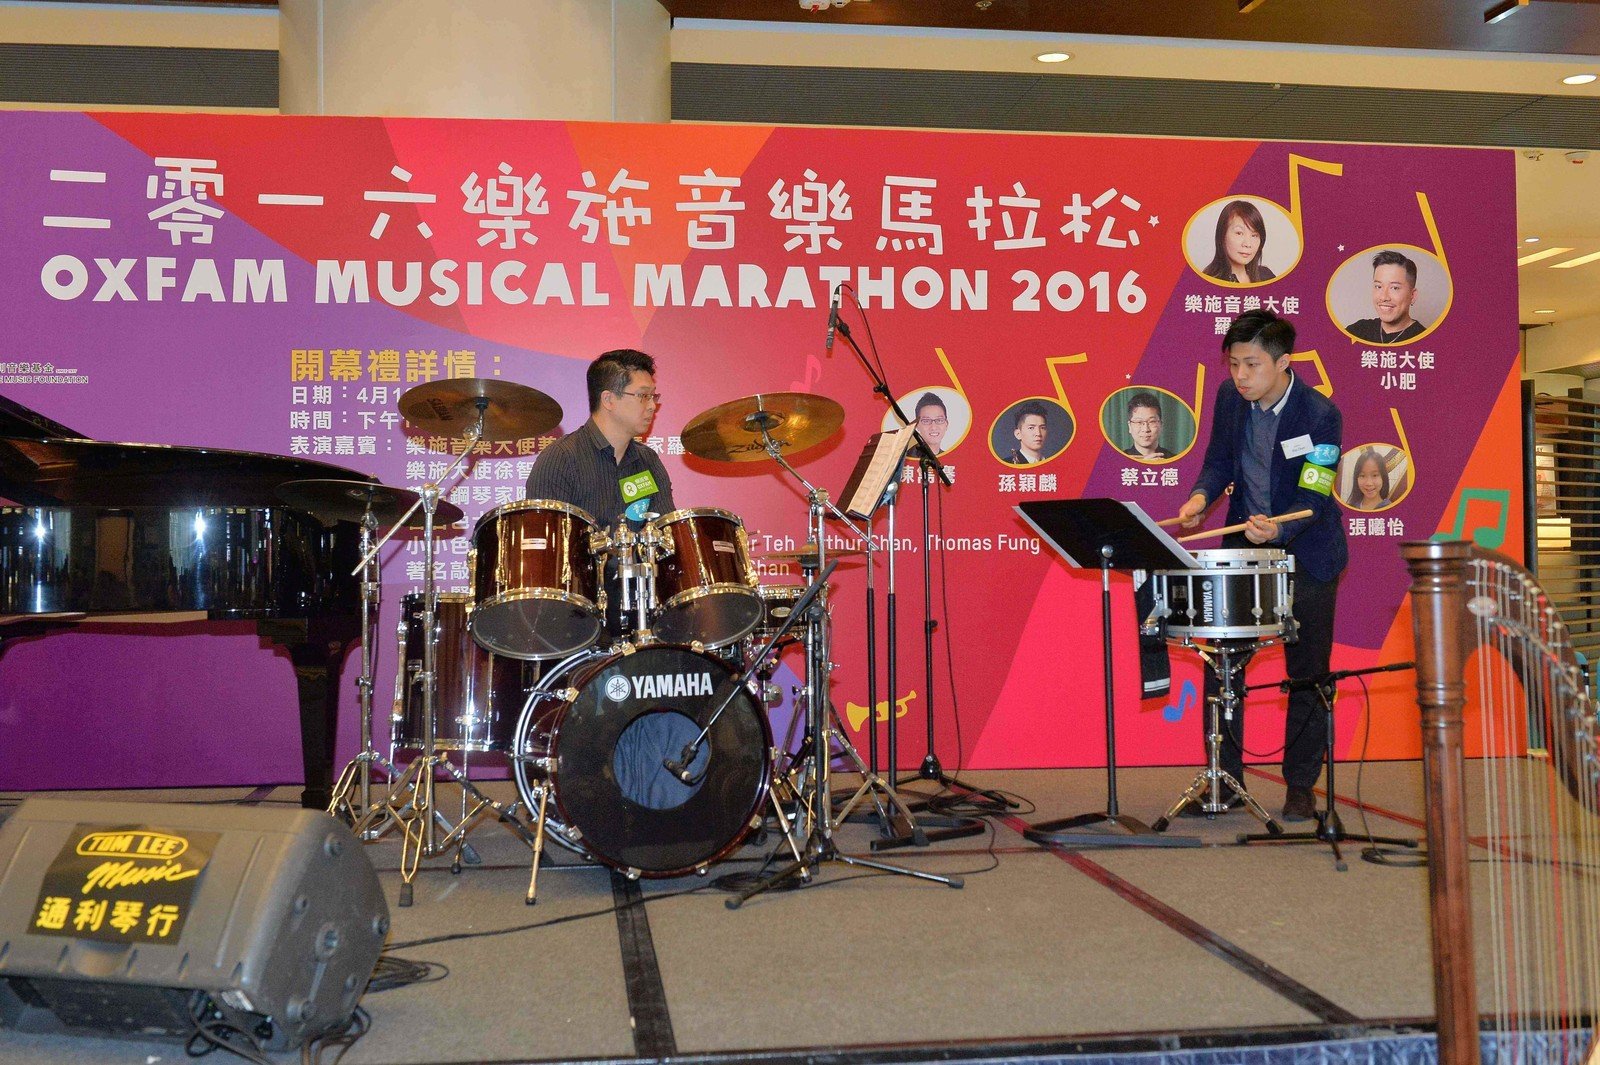 著名敲击乐家蔡立德及其学生Gip Chan表演步操小鼓及爵士鼓二重奏，为「2016乐施音乐马拉松」开幕礼揭开序幕。